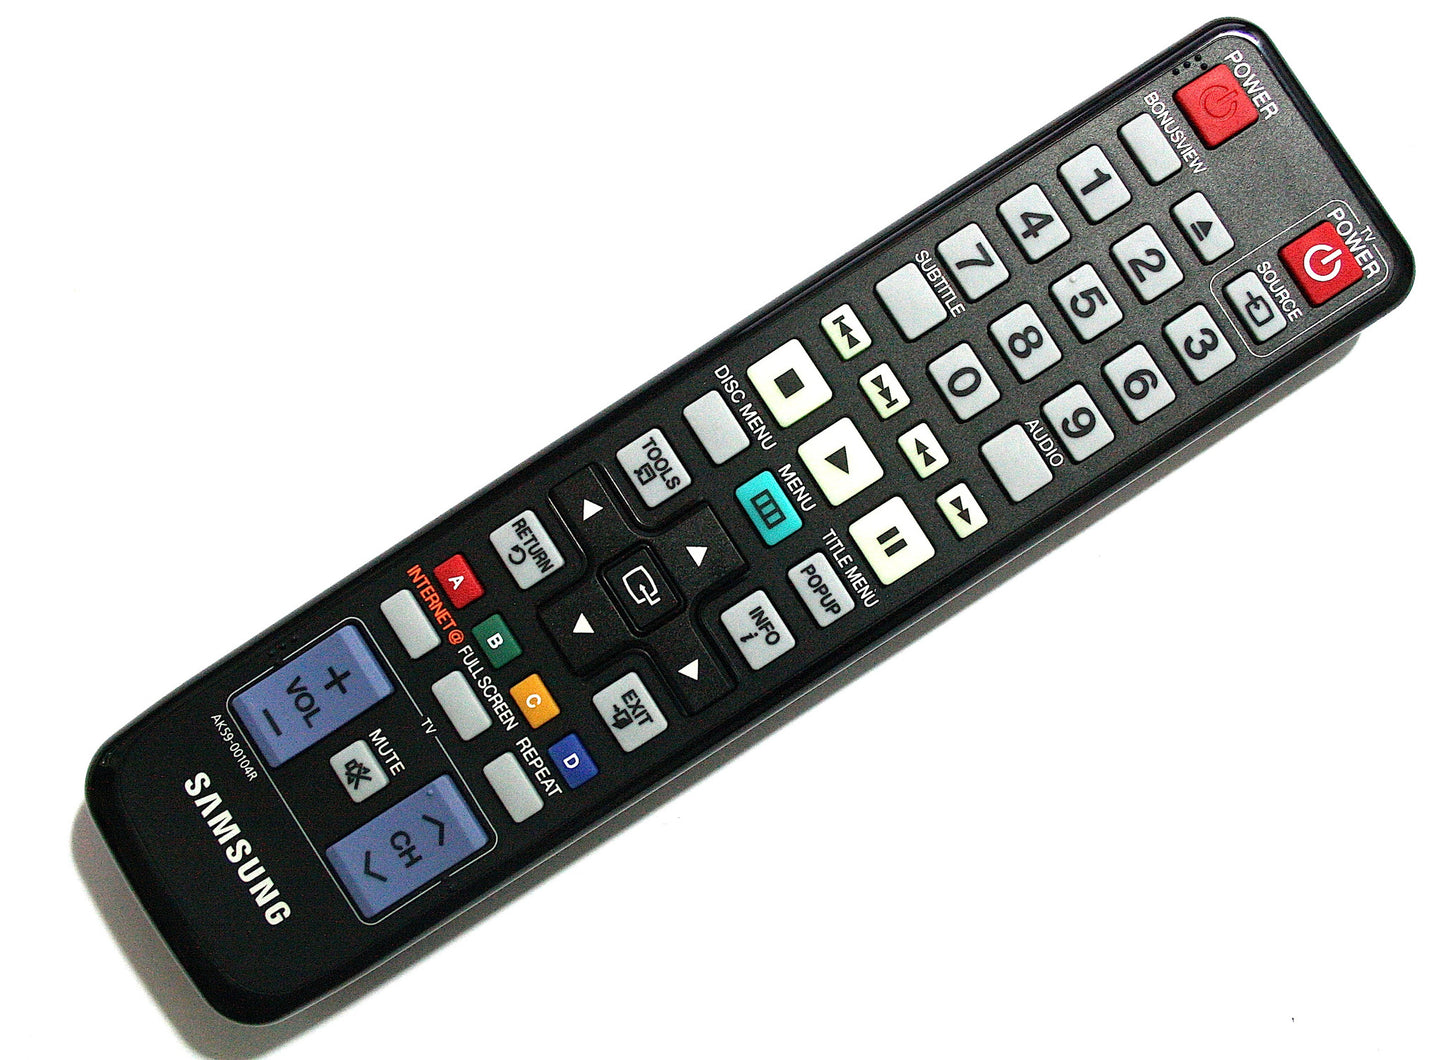 Samsung Remote Control AK59-00104R